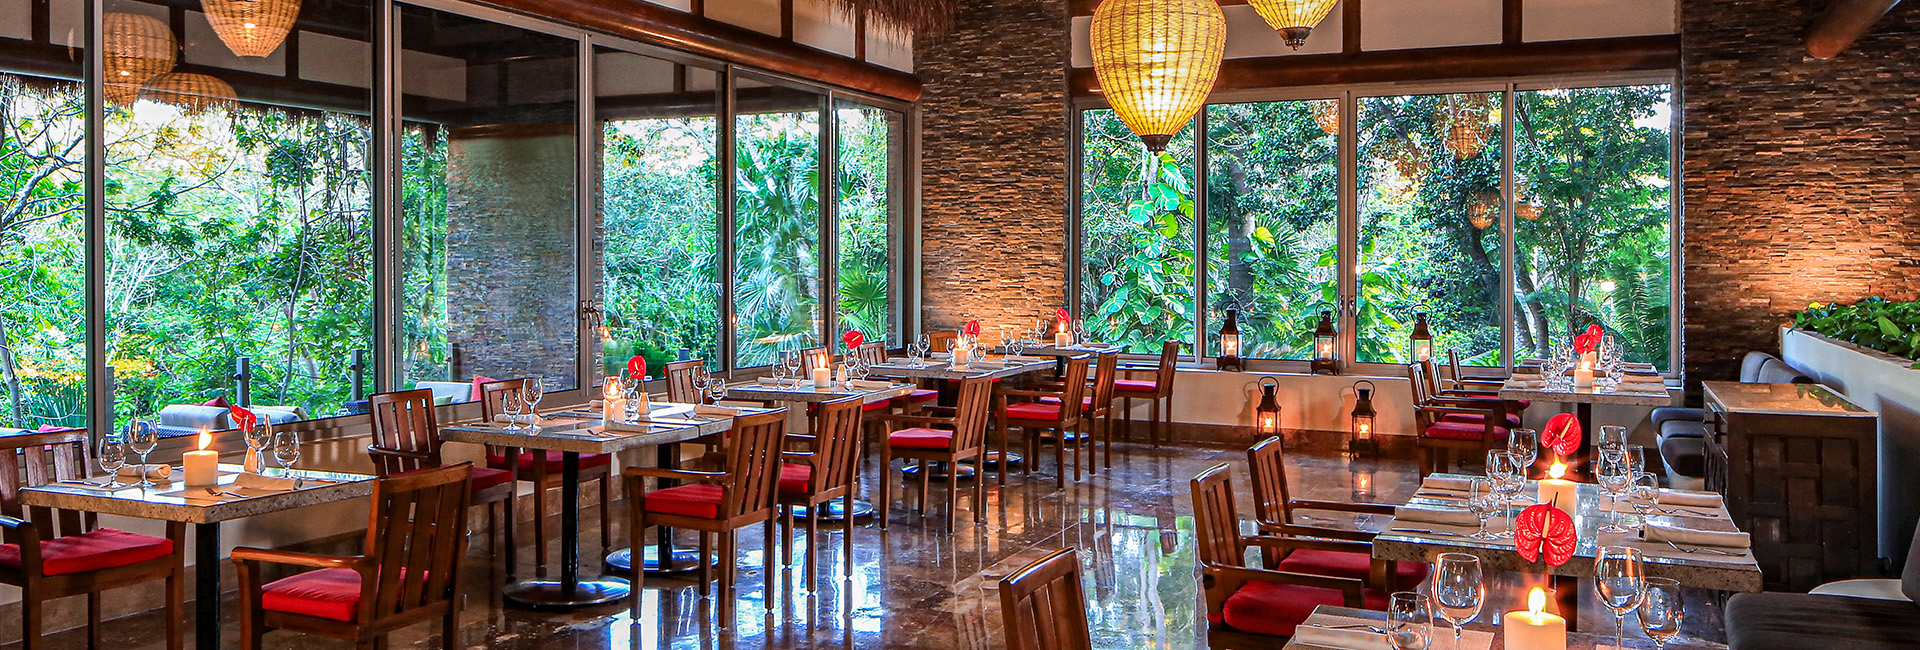 Chaka Restaurant in Grand Velas Riviera Maya